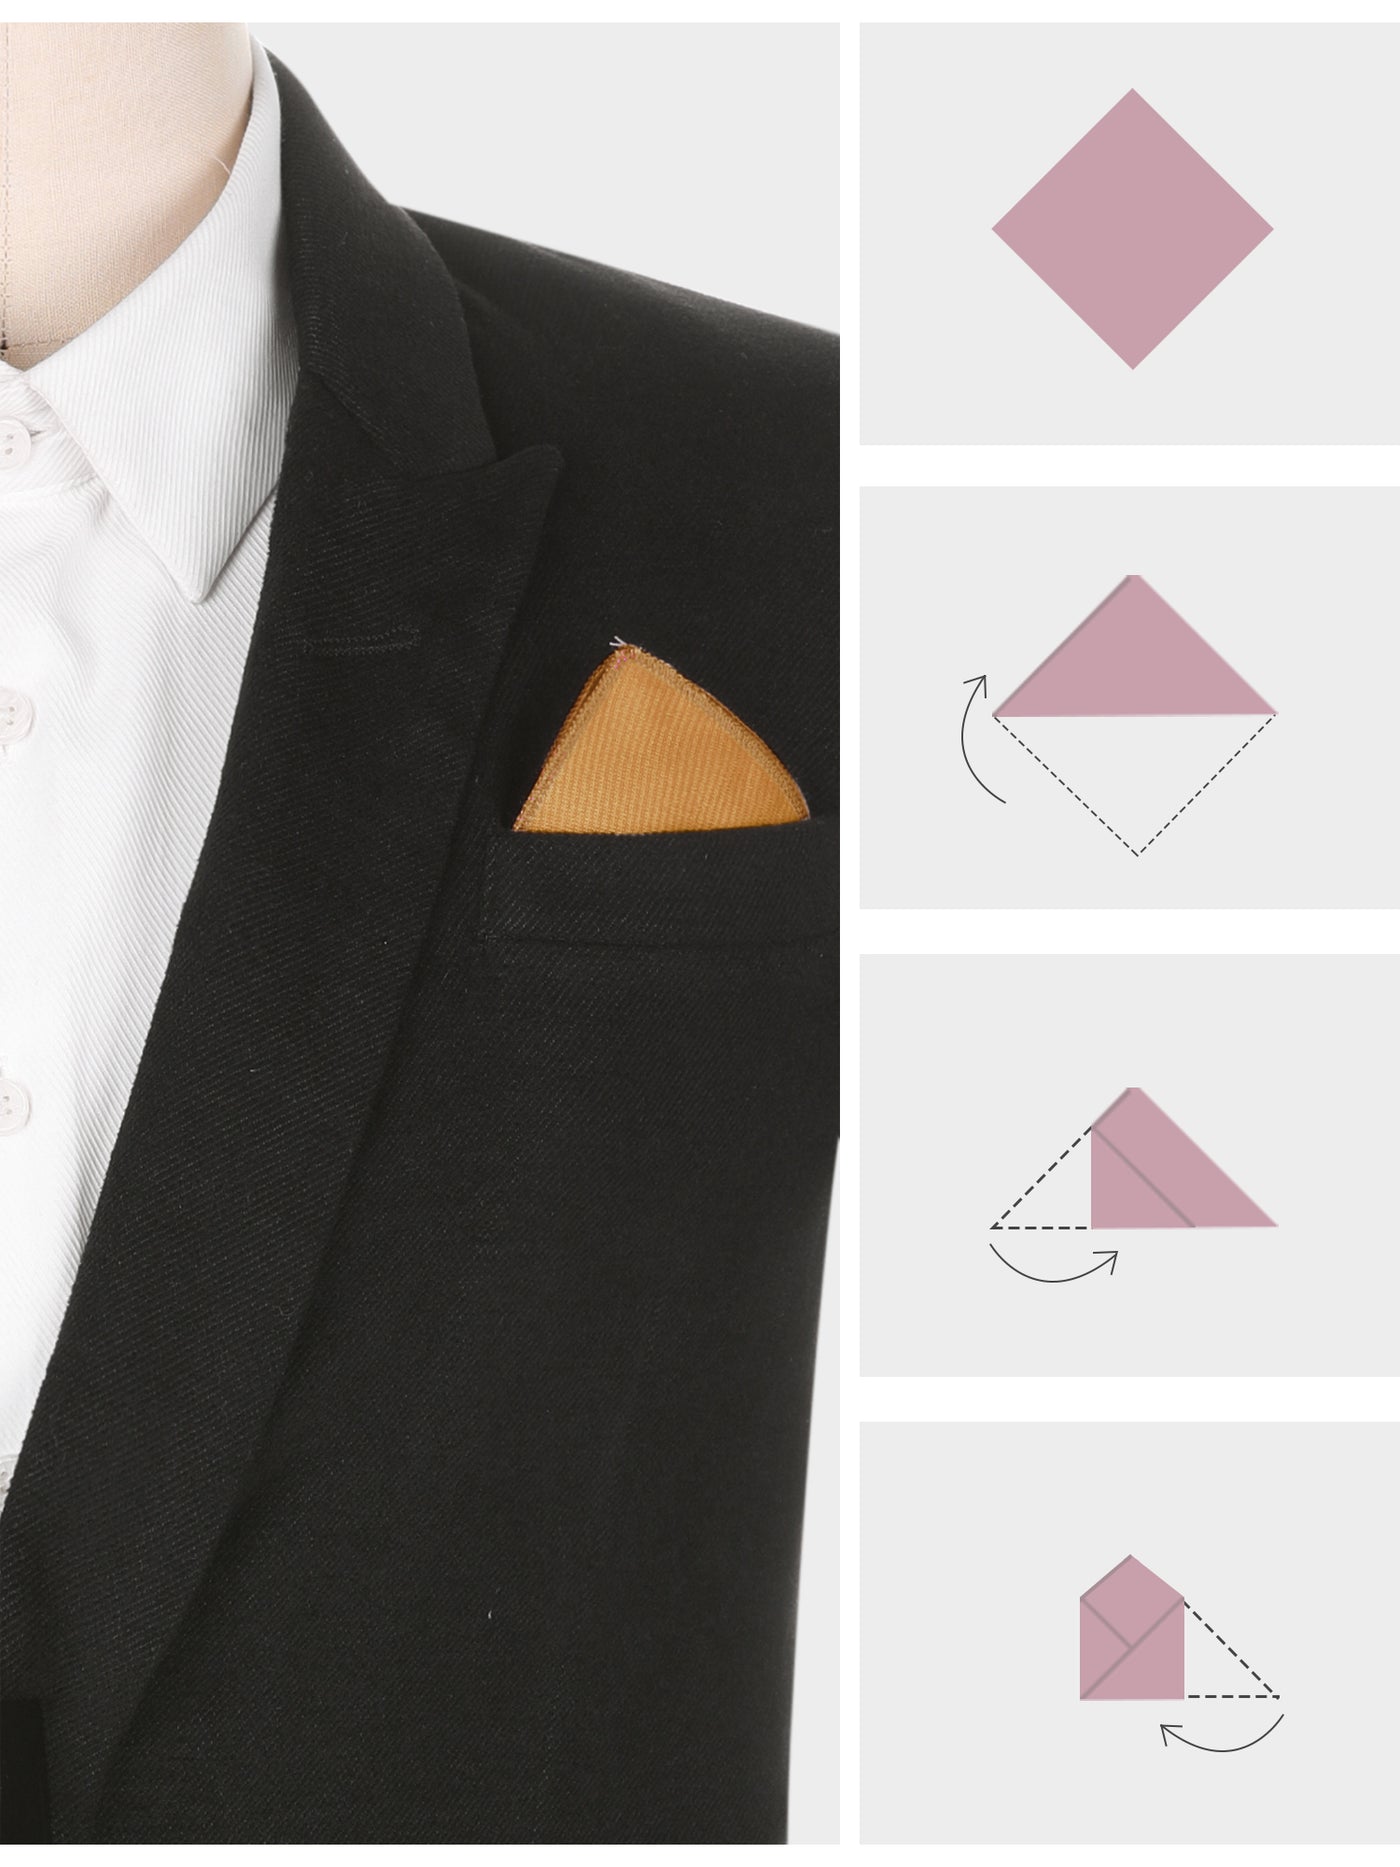 Bublédon Men's Cotton Handkerchiefs Classic Solid Color Pocket Squares for Formal Suit